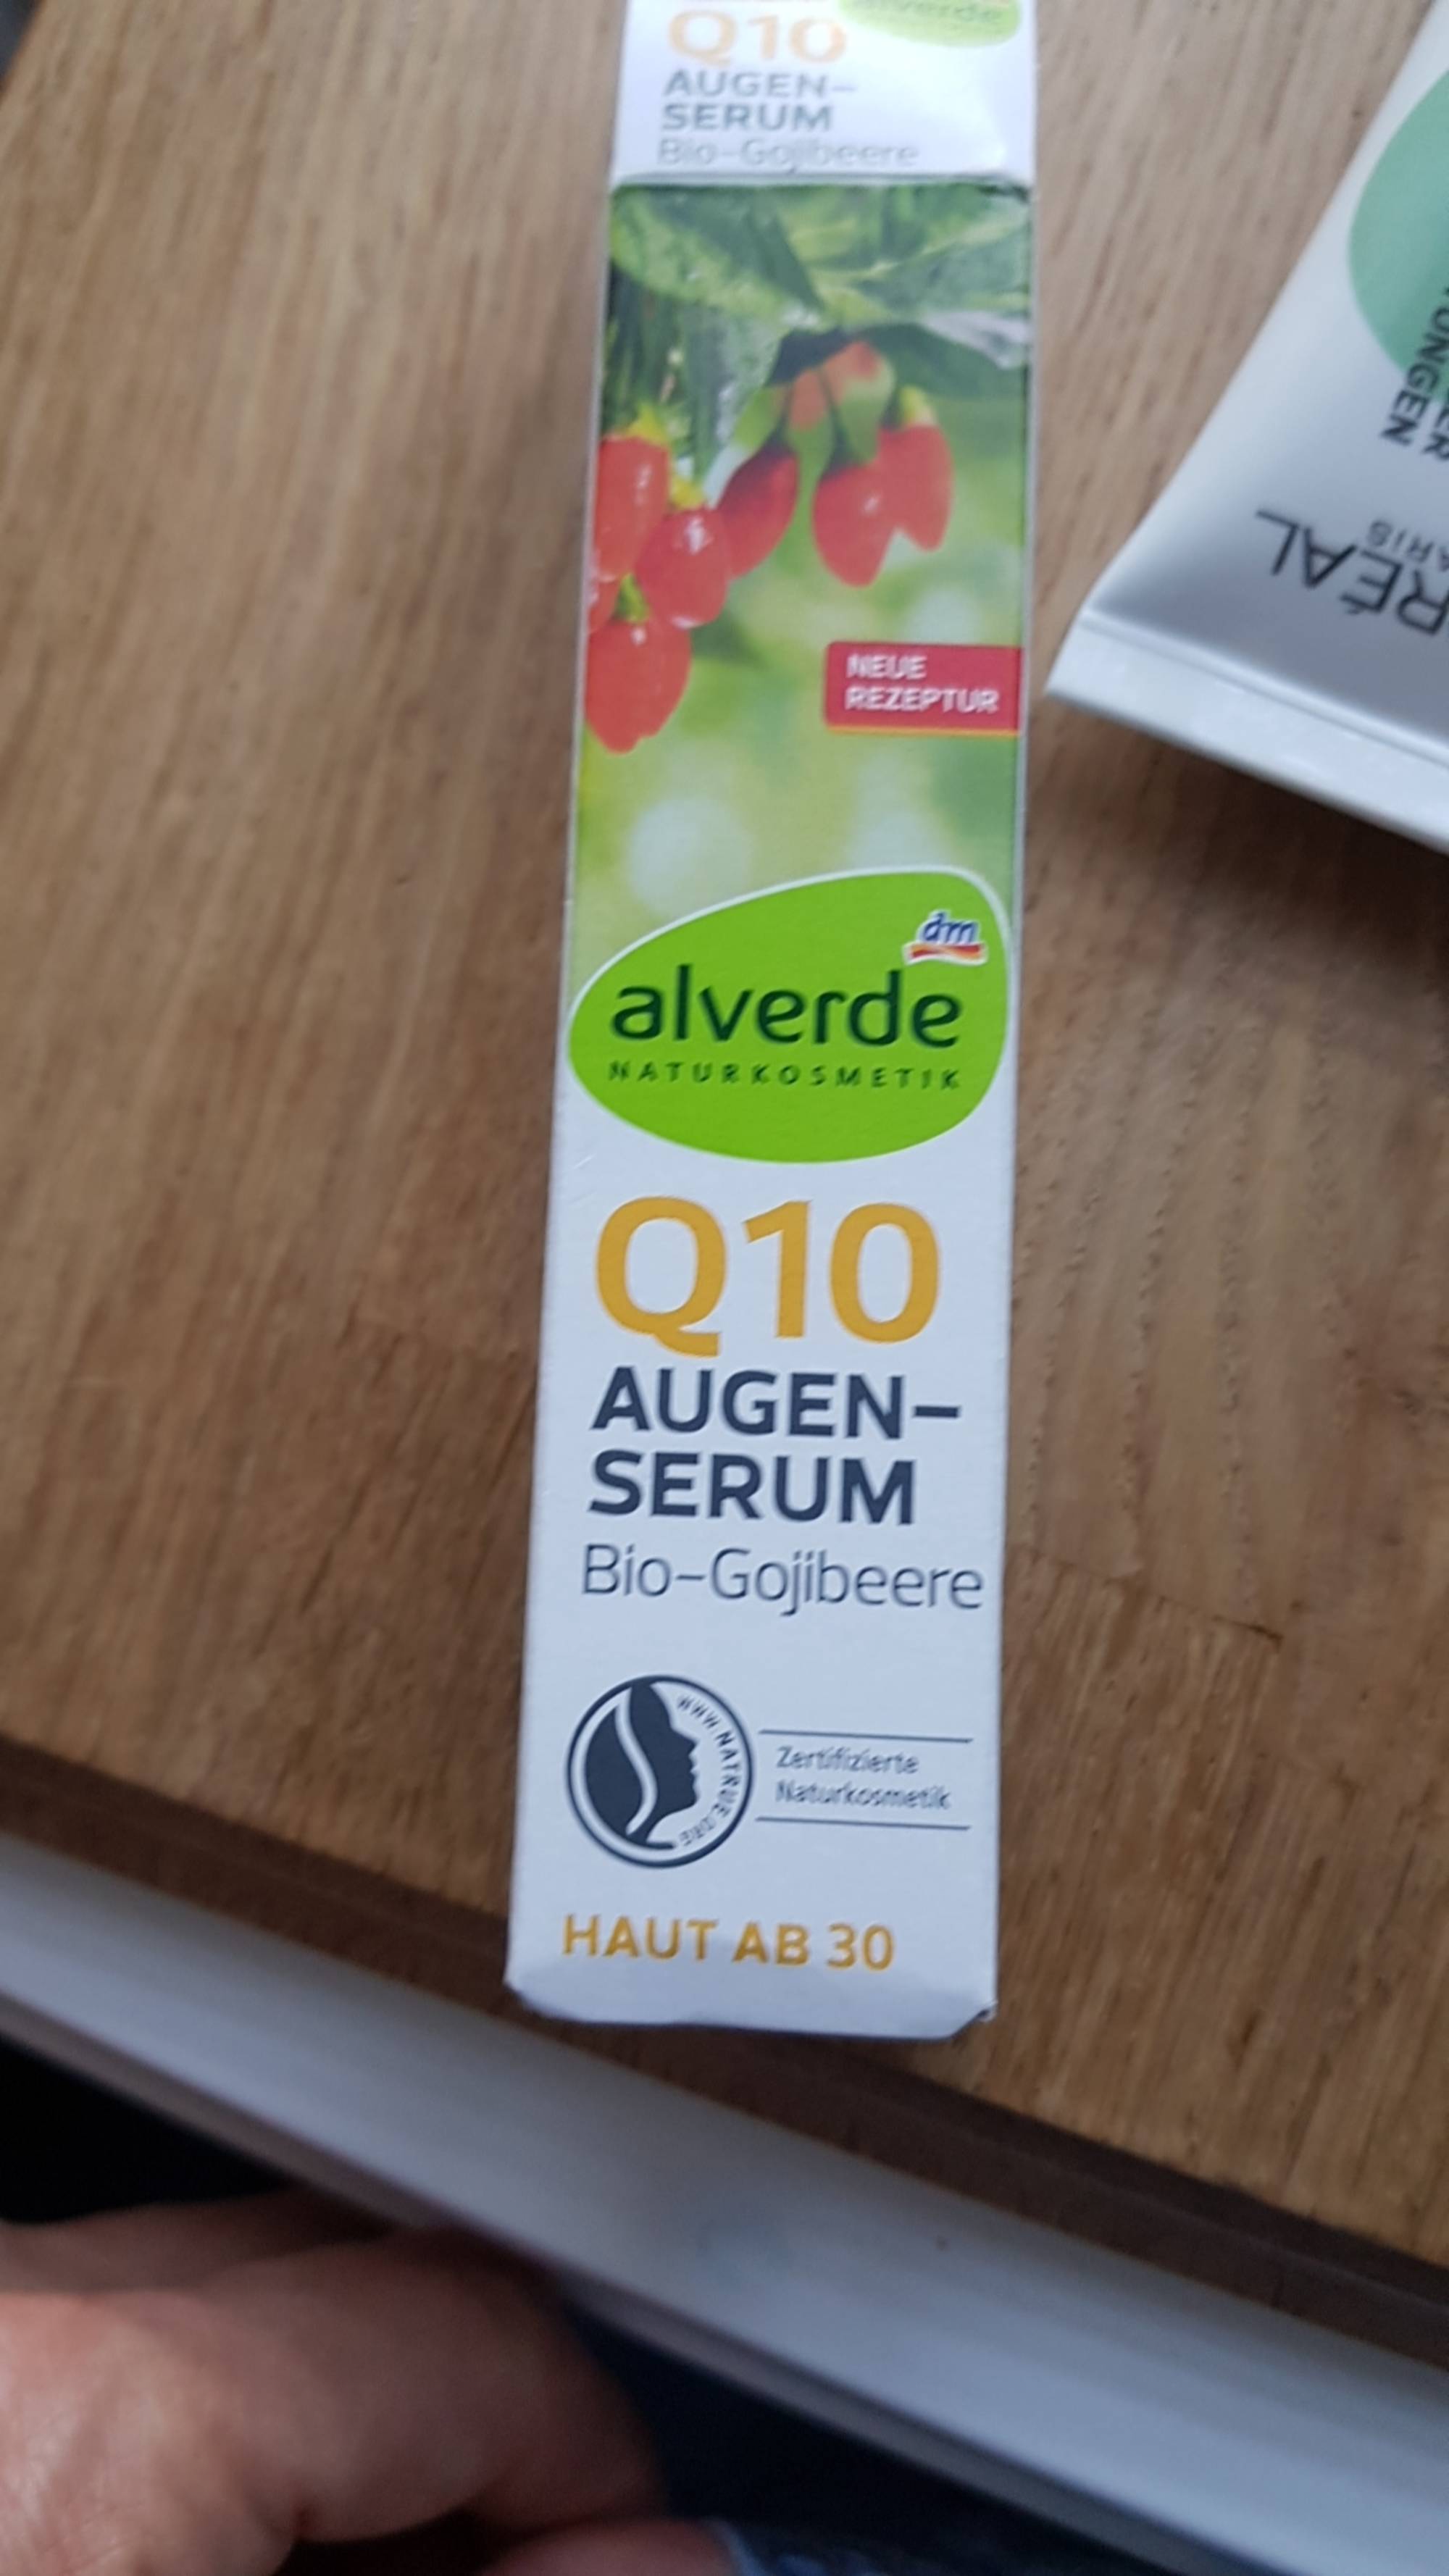 DM - Alverde - Q10 Augen-serum